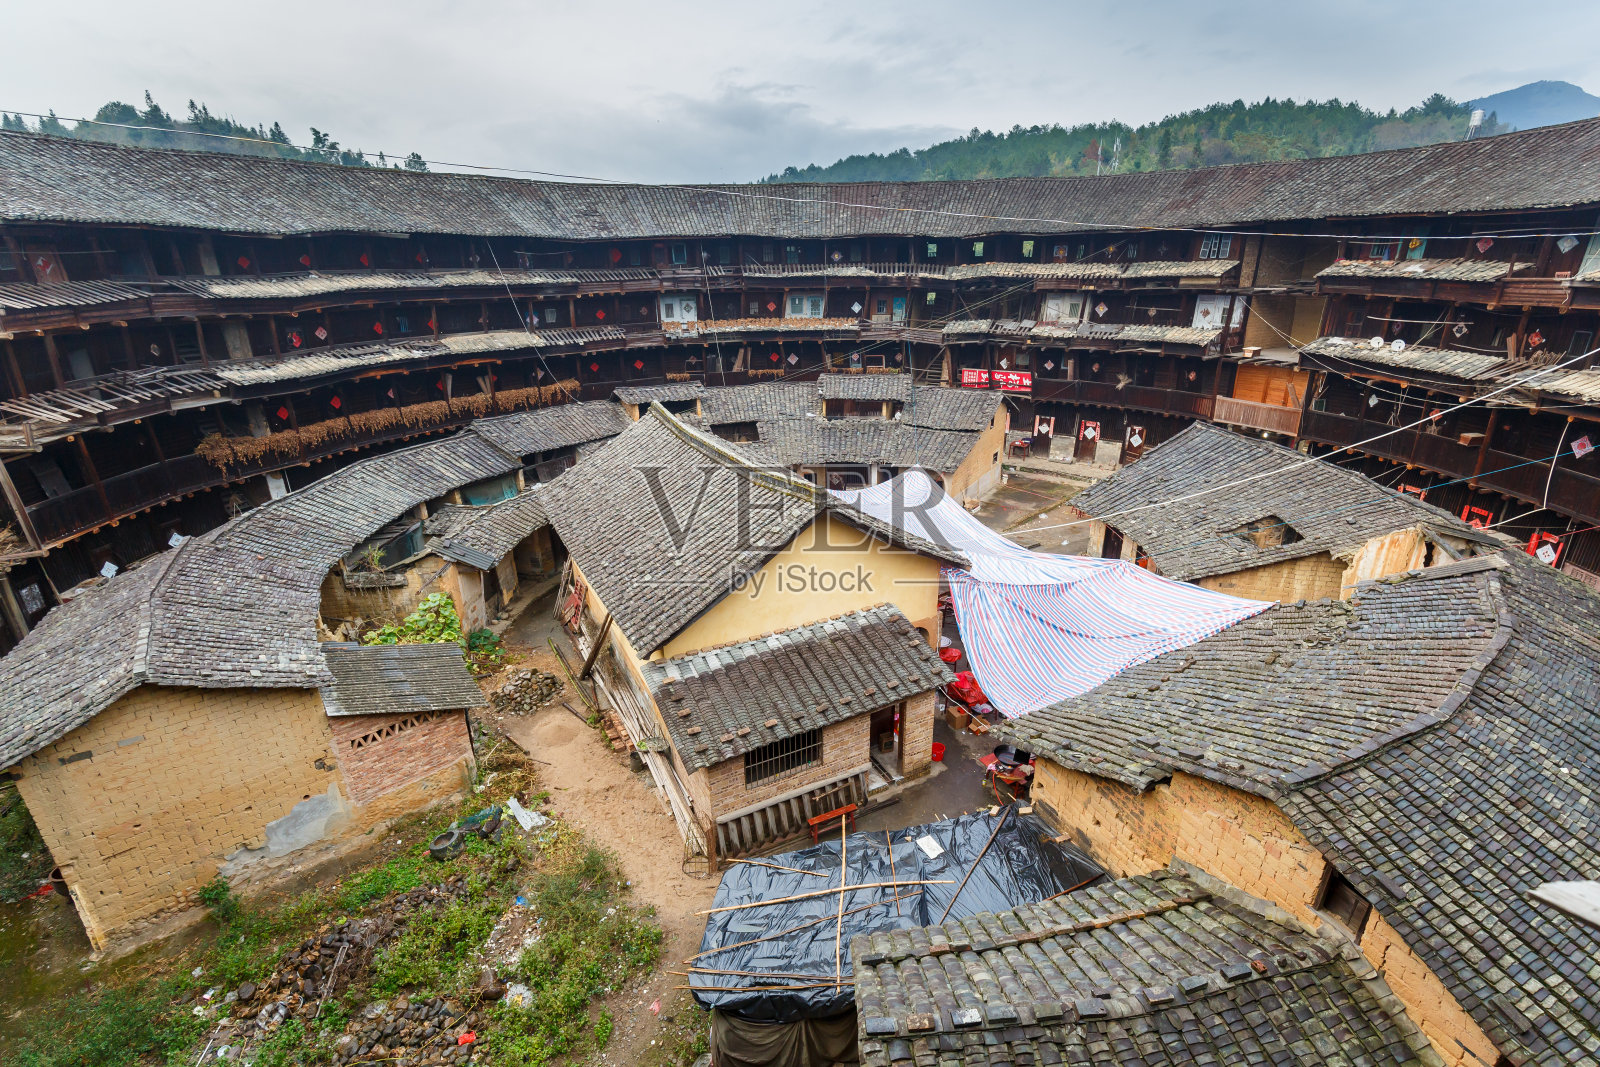 土楼景观:传统的圆屋客家人(福建省，中国)照片摄影图片